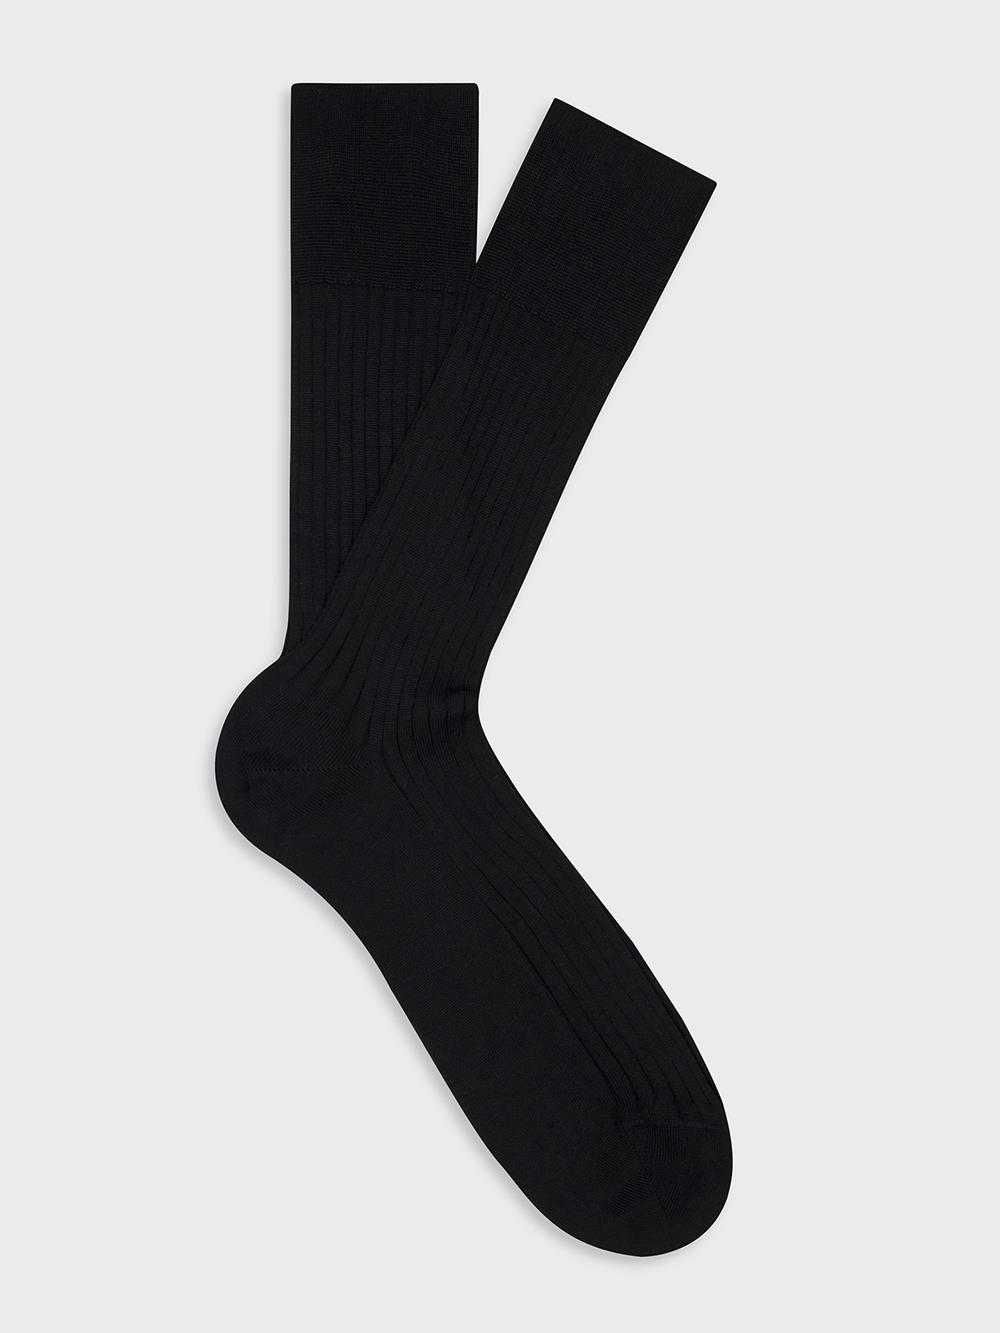 Bret sokken in zwart ruitjesgaren